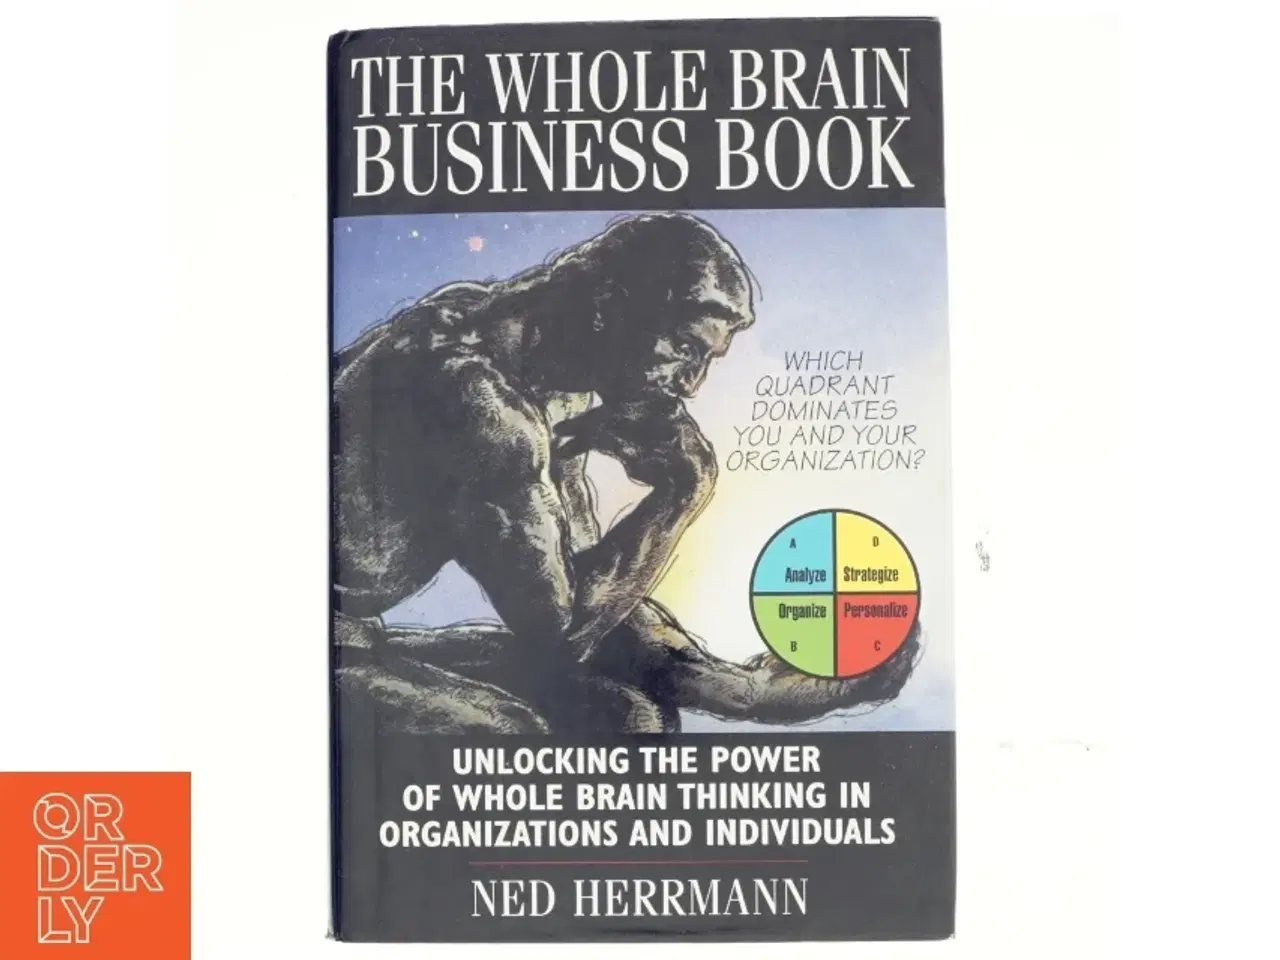 Billede 1 - The whole brain business book af Ned Herrmann (Bog)